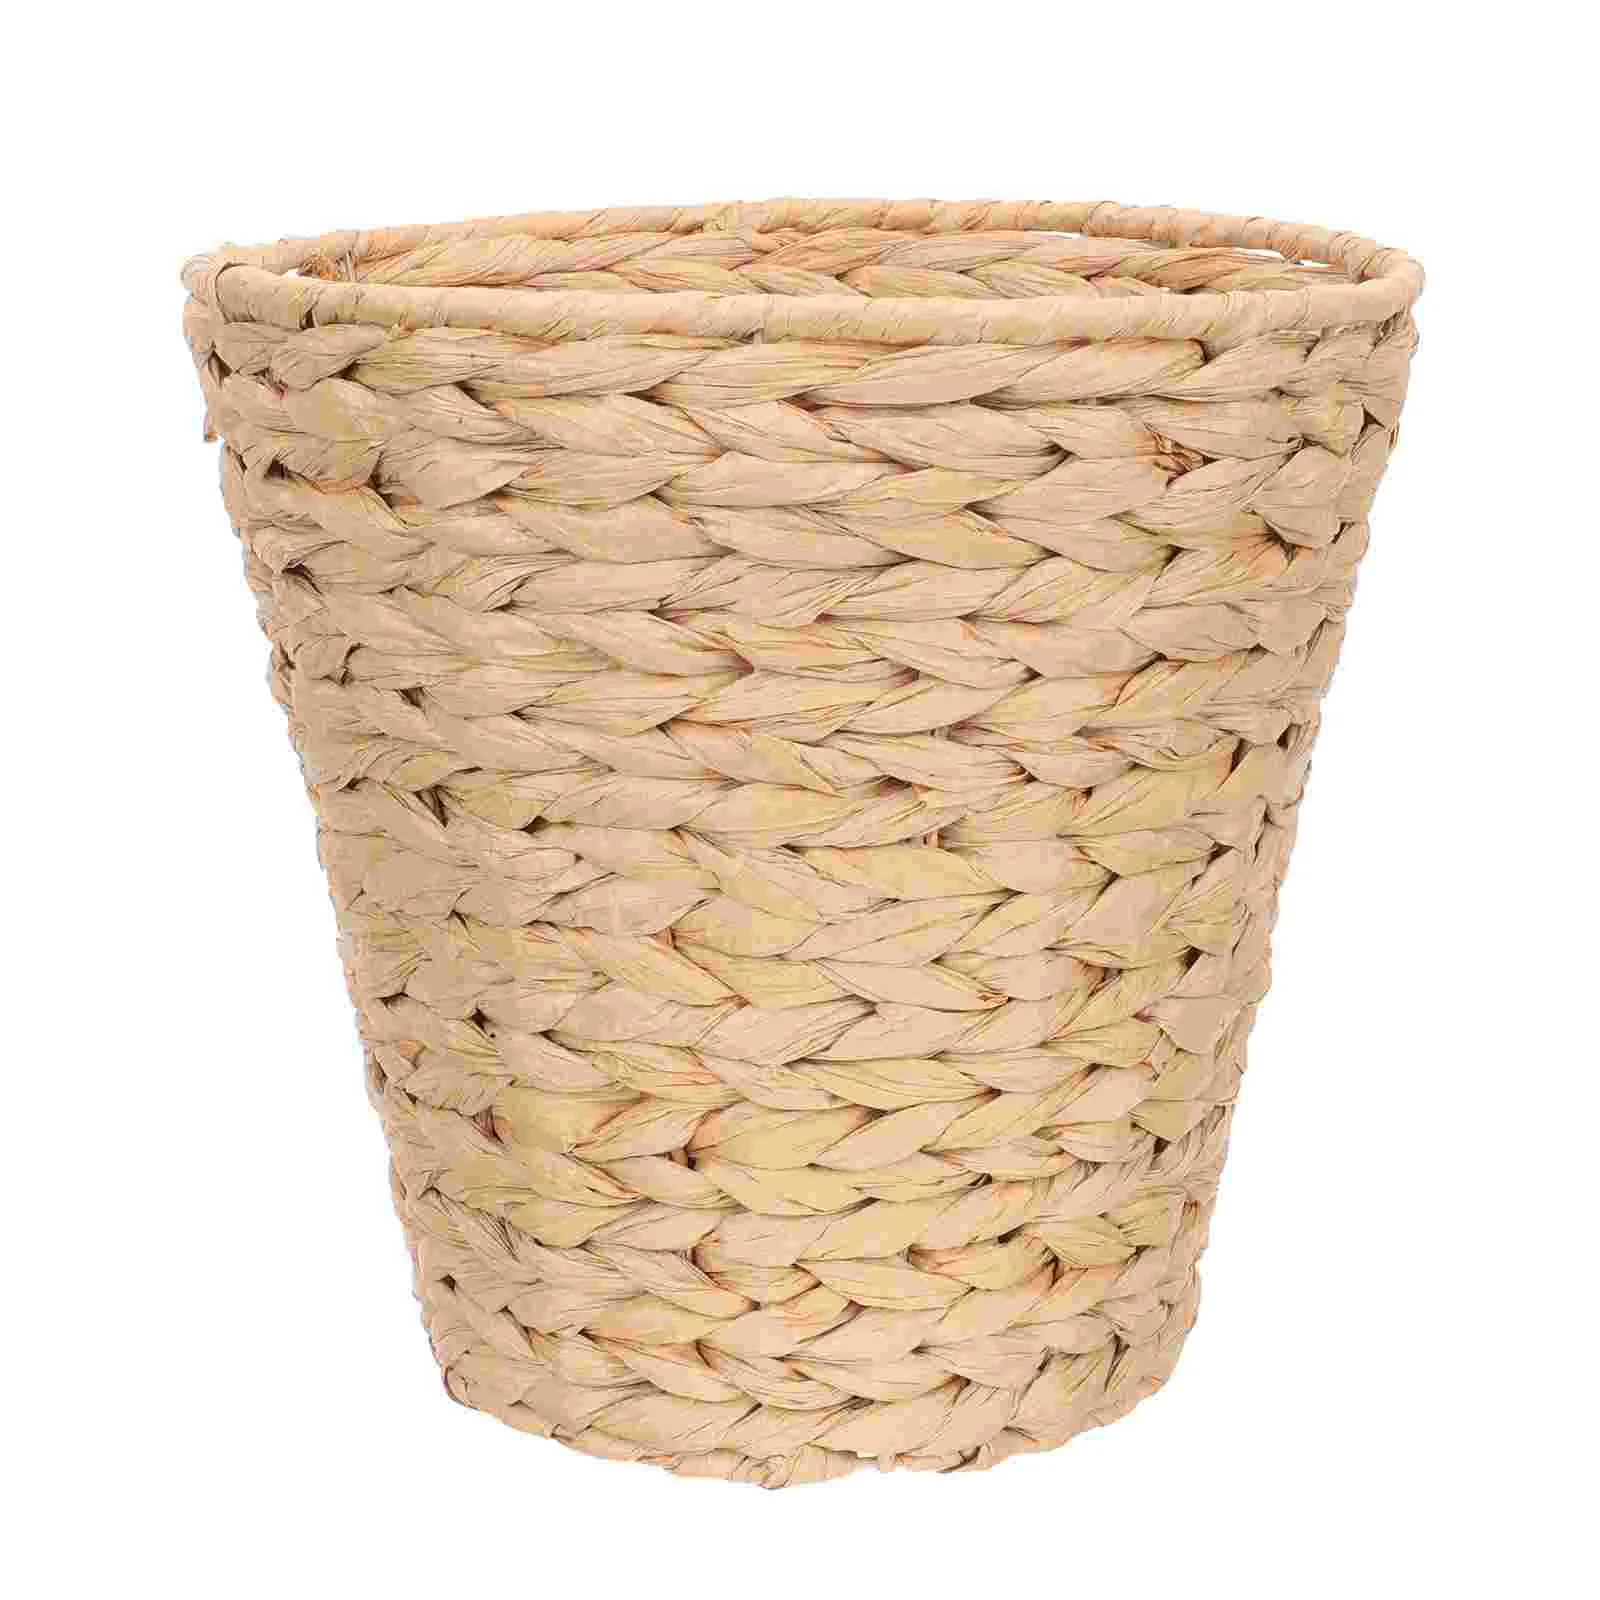 

Rattan Trash Can Storage Bins Baskets Paper Waste Basket Wicker Round Waste Basket Iron Woven Flower Pots Office